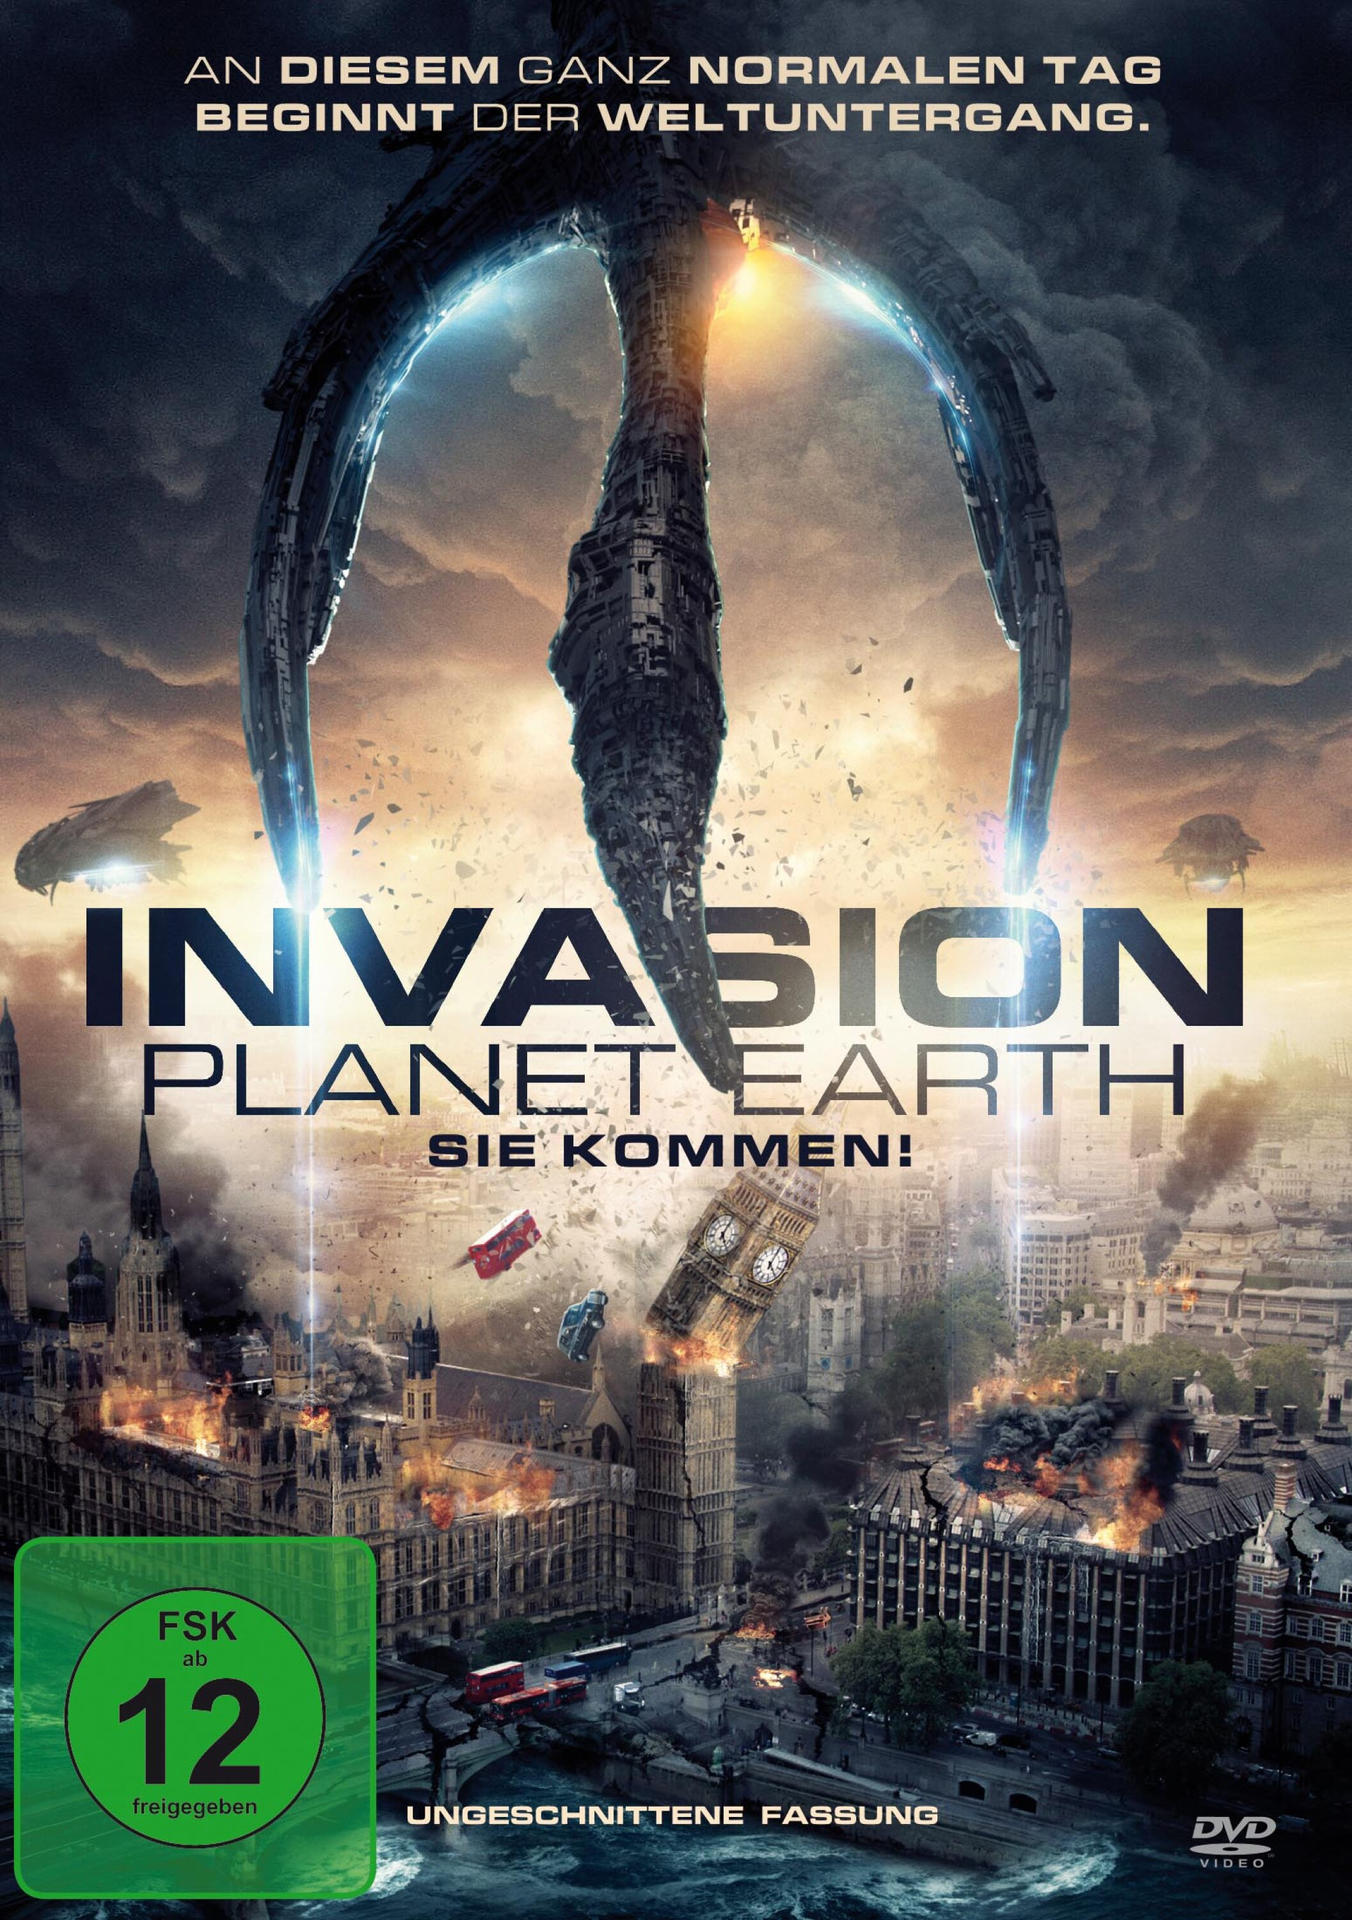 Earth-Sie Planet DVD Invasion kommen!